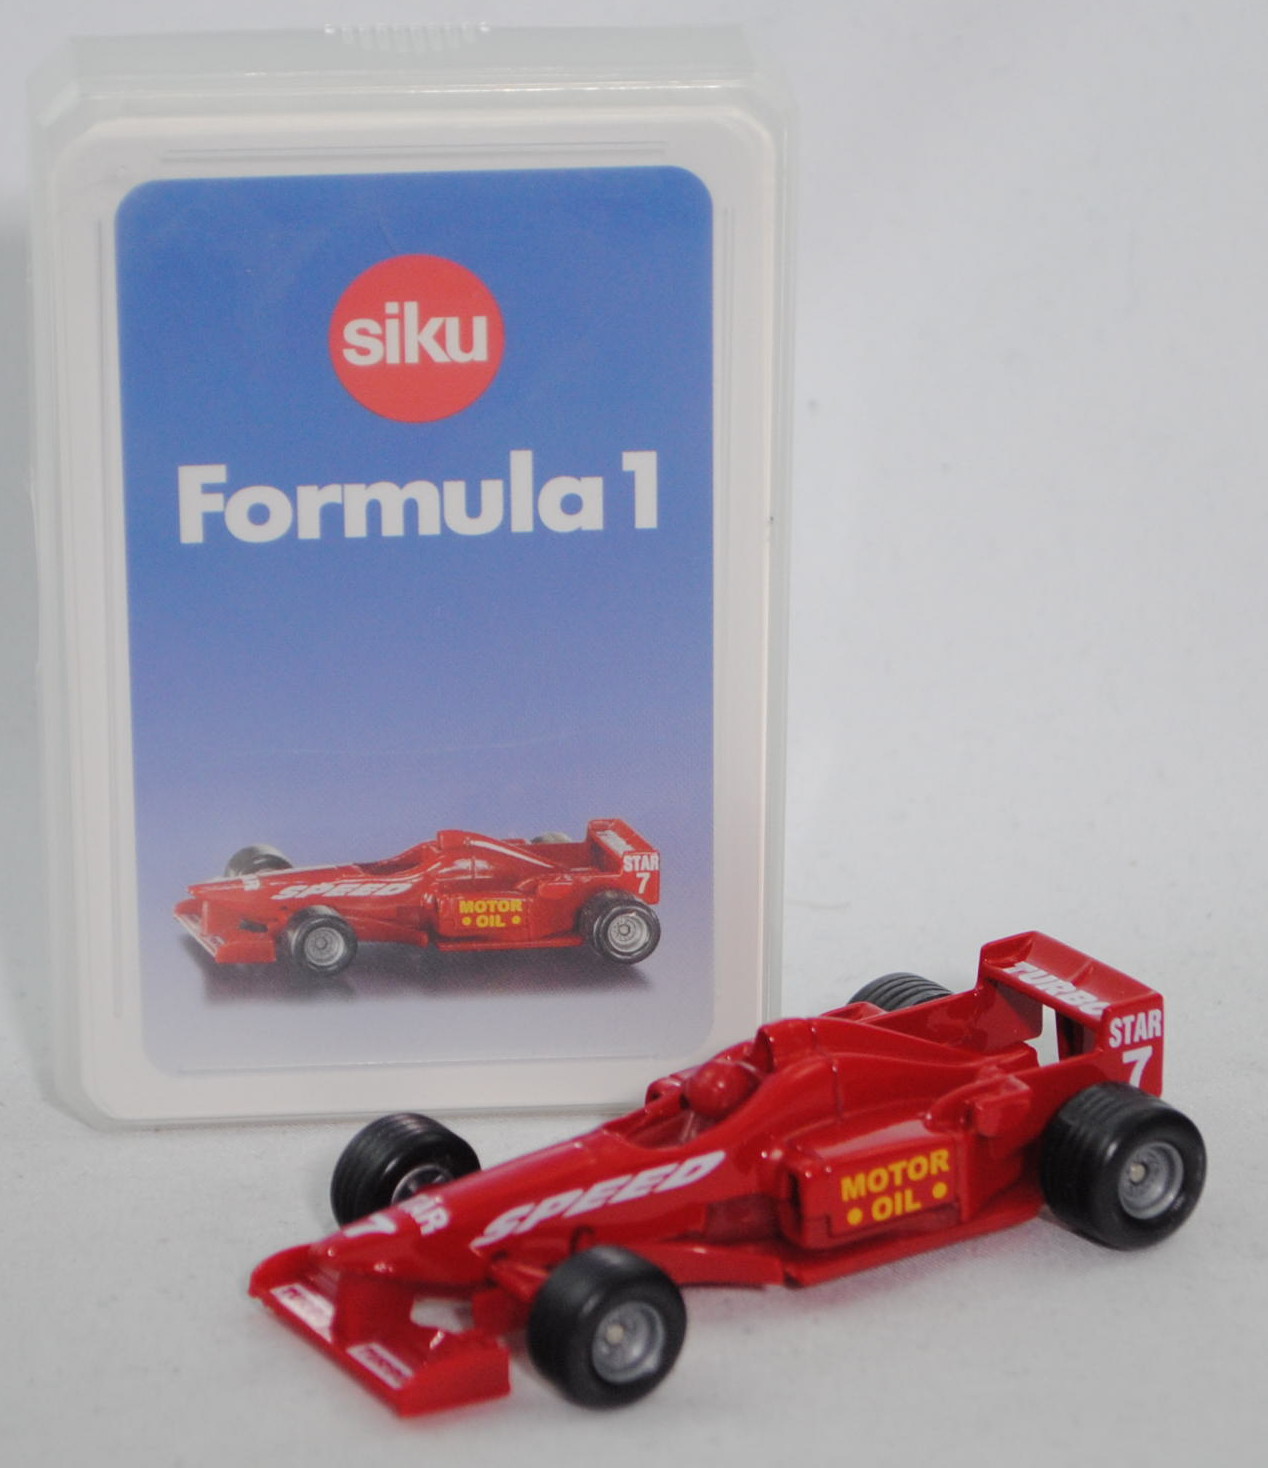 00600 GB Formula 1 Quartett mit Formel 1 Rennwagen, karminrot, ca. 1:55, SIKU SUPER / TOP ASS, P28b